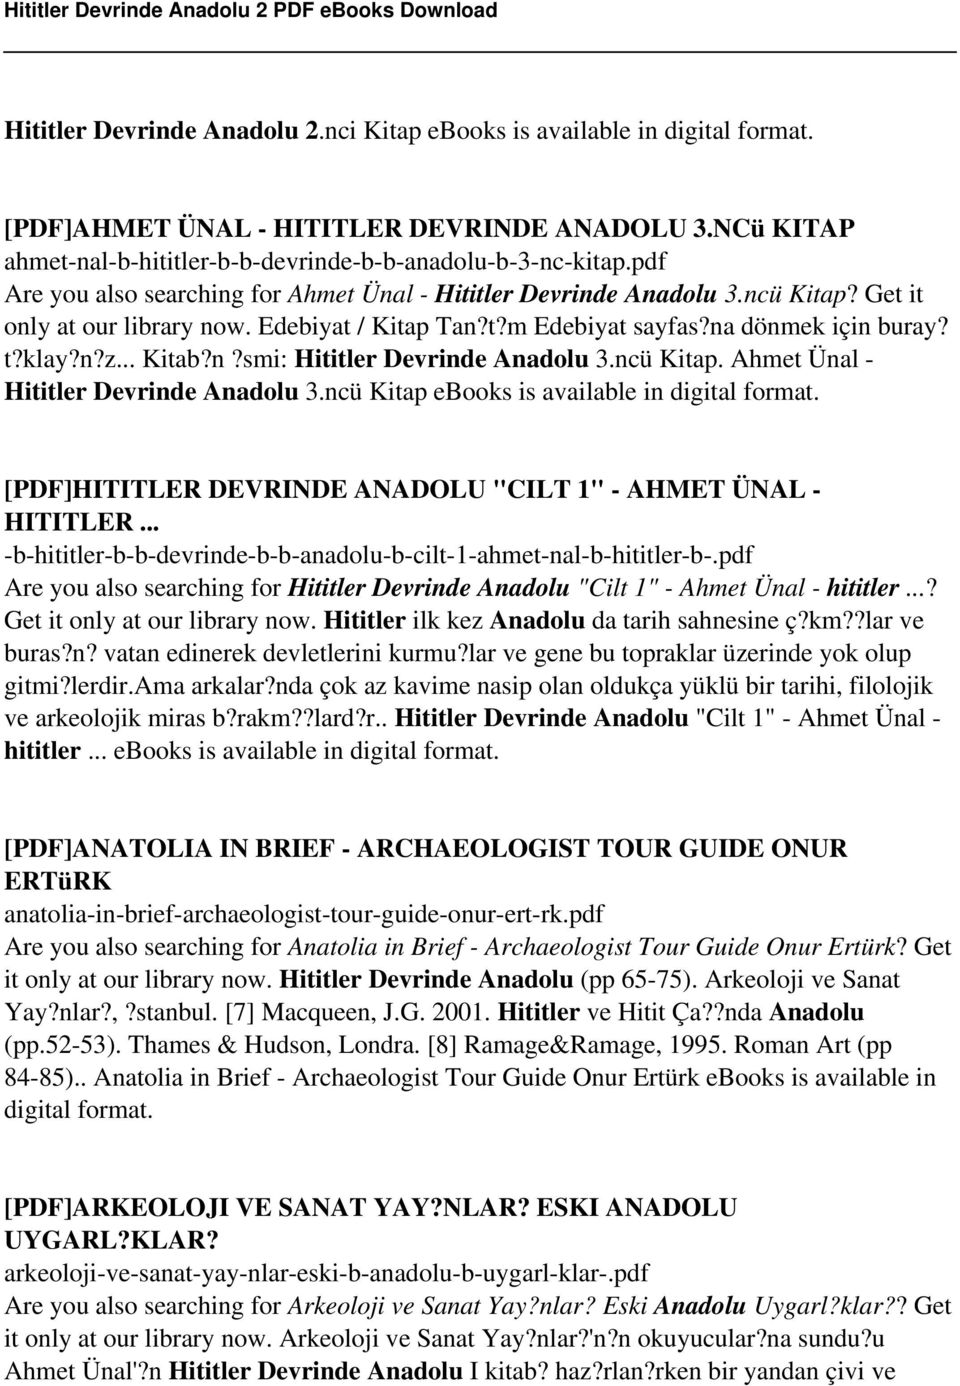 ncü Kitap. Ahmet Ünal - Hititler Devrinde Anadolu 3.ncü Kitap ebooks is available in digital format. [PDF]HITITLER DEVRINDE ANADOLU "CILT 1" - AHMET ÜNAL - HITITLER.